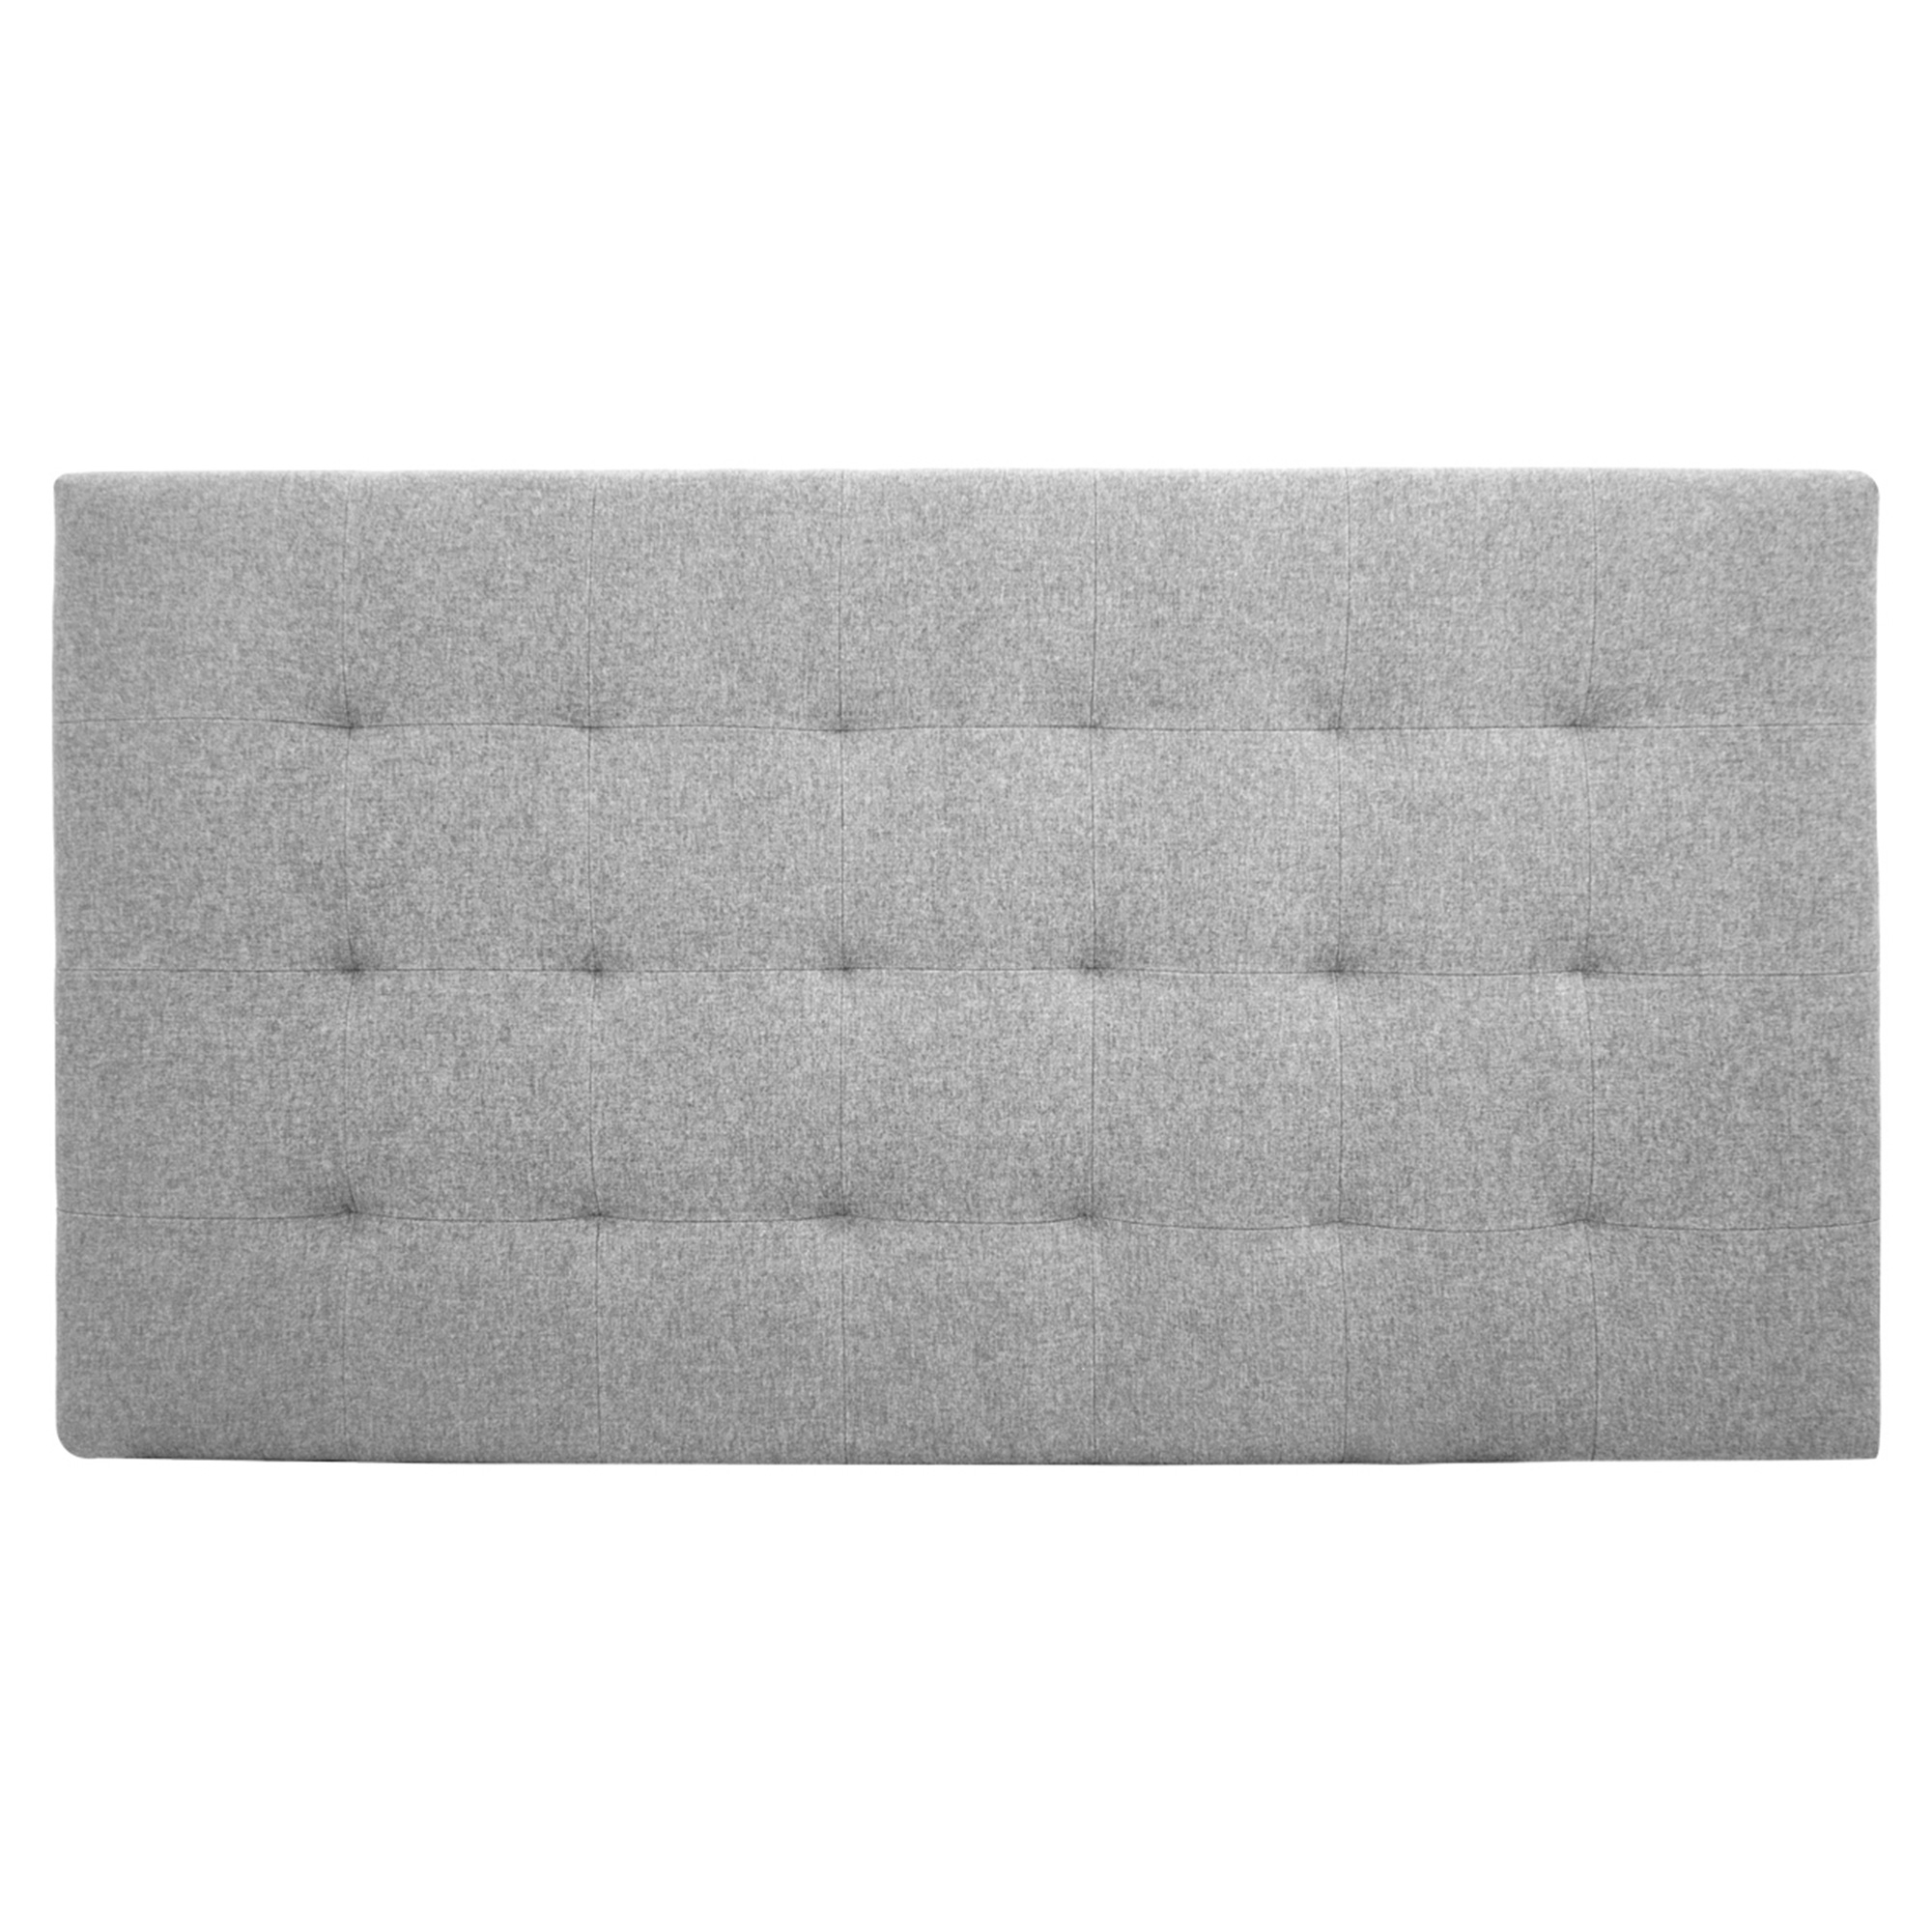 Tête de lit polyester plis couleur grise 160x80cm